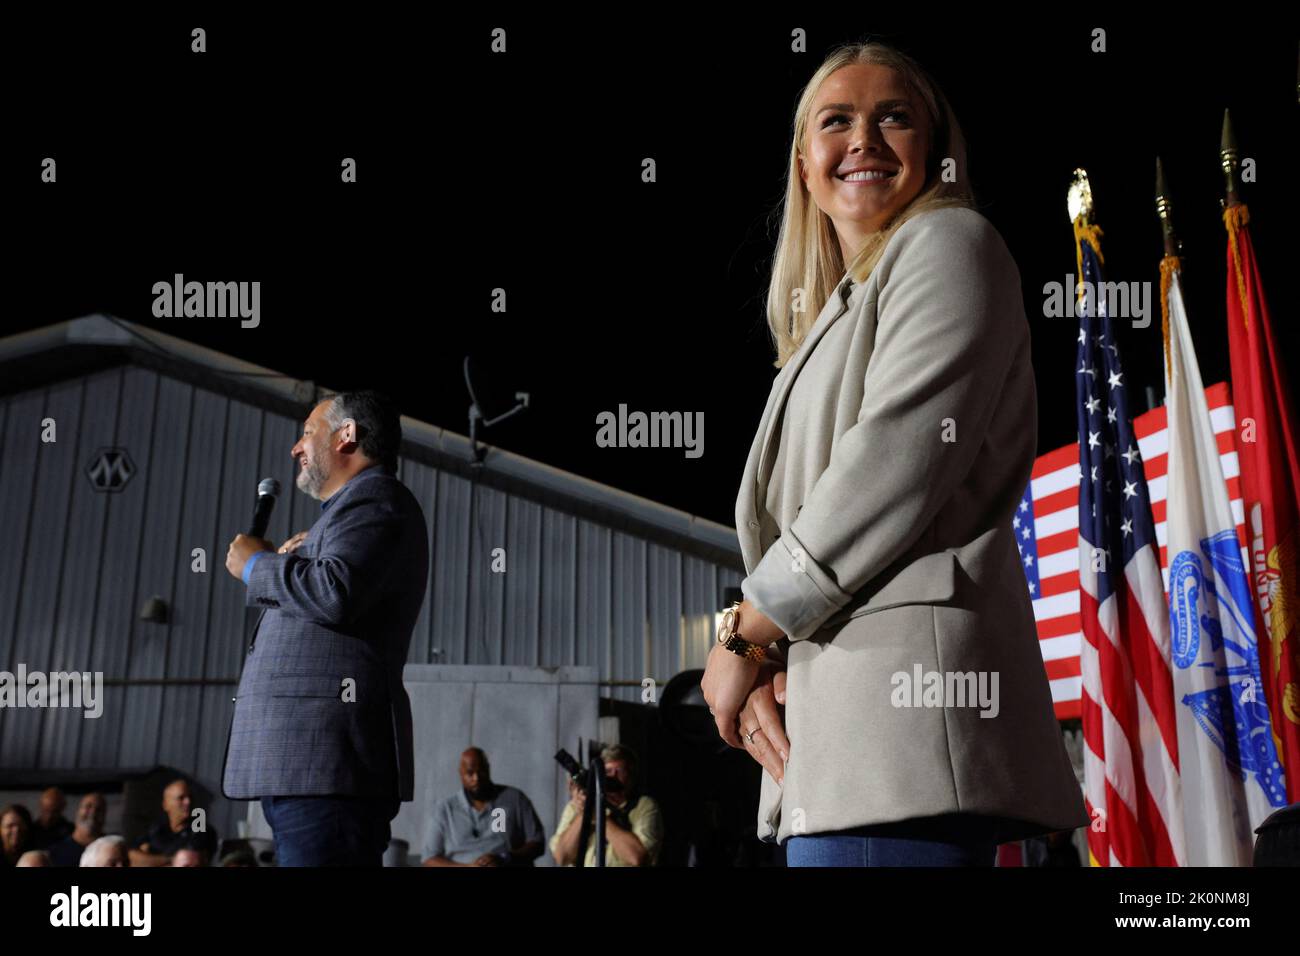 La candidate républicaine à la Chambre des représentants des États-Unis Karoline Leavitt est rejointe et approuvée par le sénateur américain Ted Cruz (R-TX) lors d'un rassemblement de vote à Londonderry, New Hampshire, États-Unis, 8 septembre 2022. REUTERS/Brian Snyder Banque D'Images